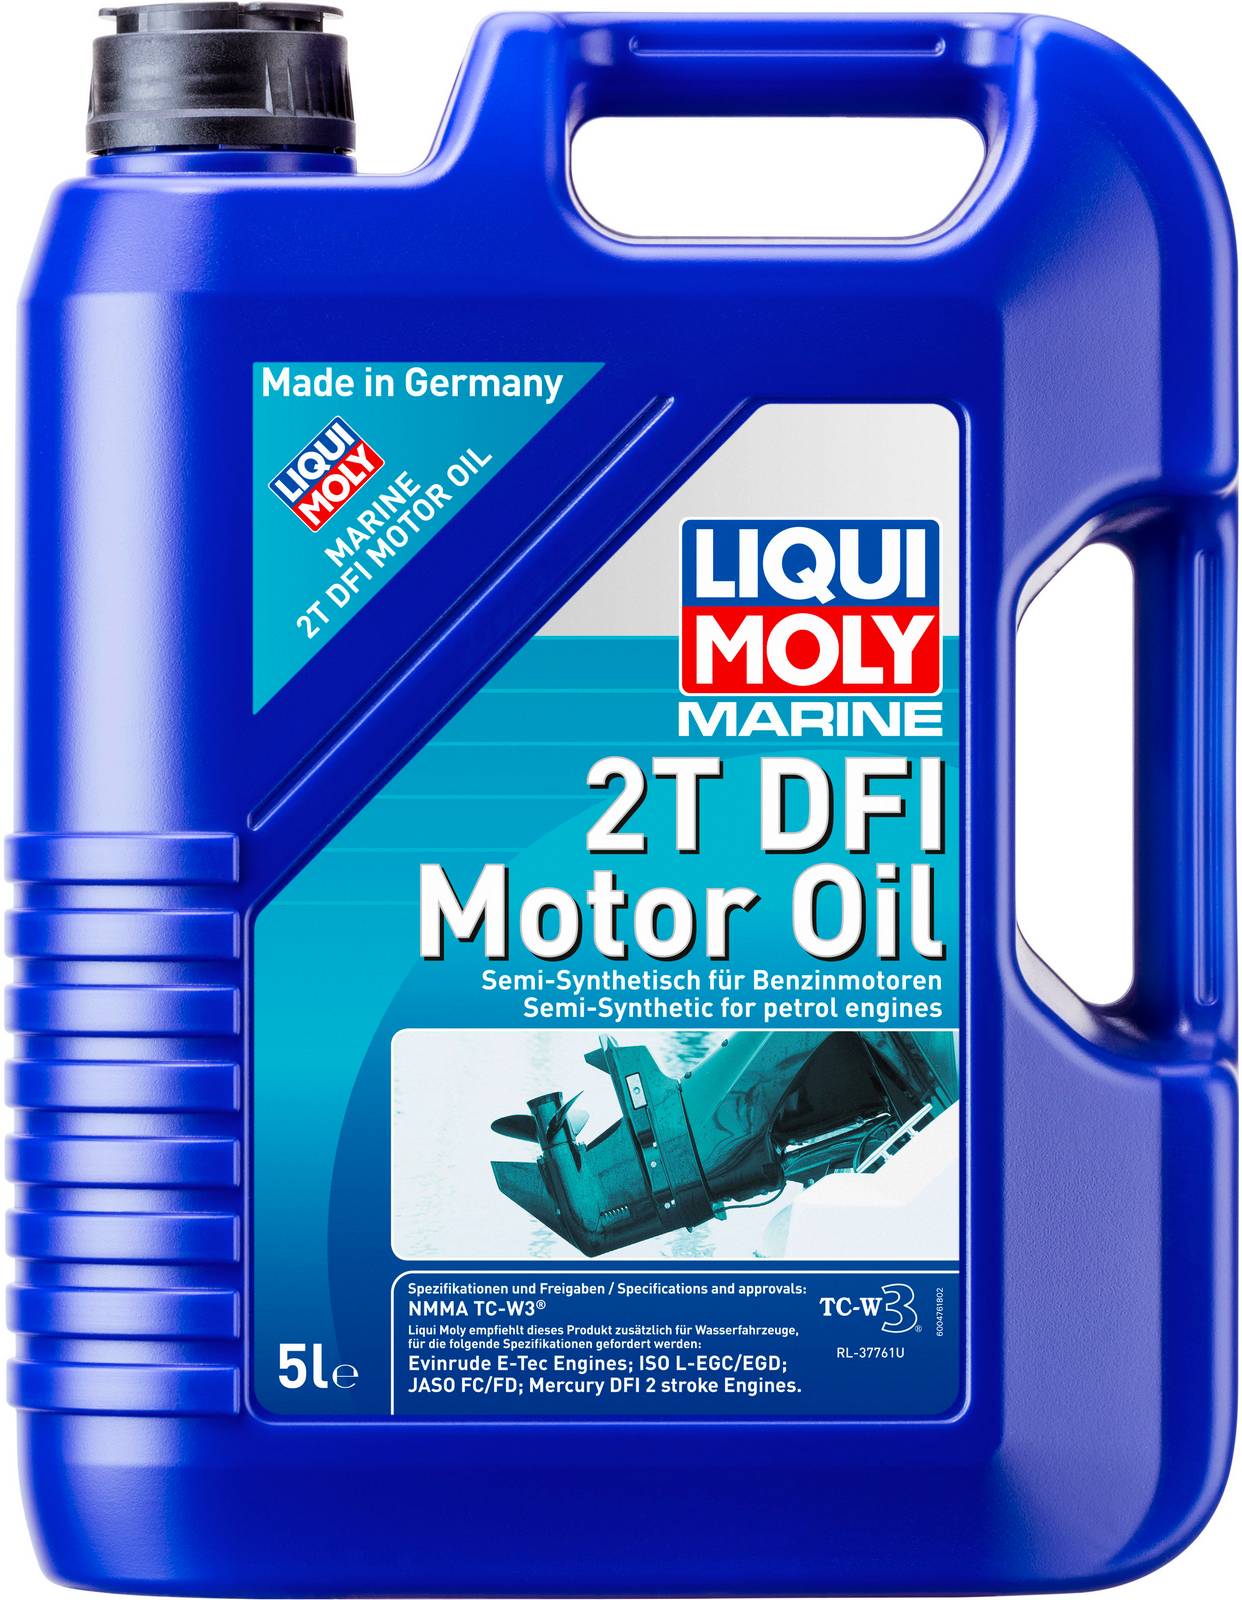 Моторное масло для водной техники Liqui Moly Marine 2T DFI Motor Oil 5л + трансмиссионное масло Marine Gear Oil 80W-90 0,25л в Подарок